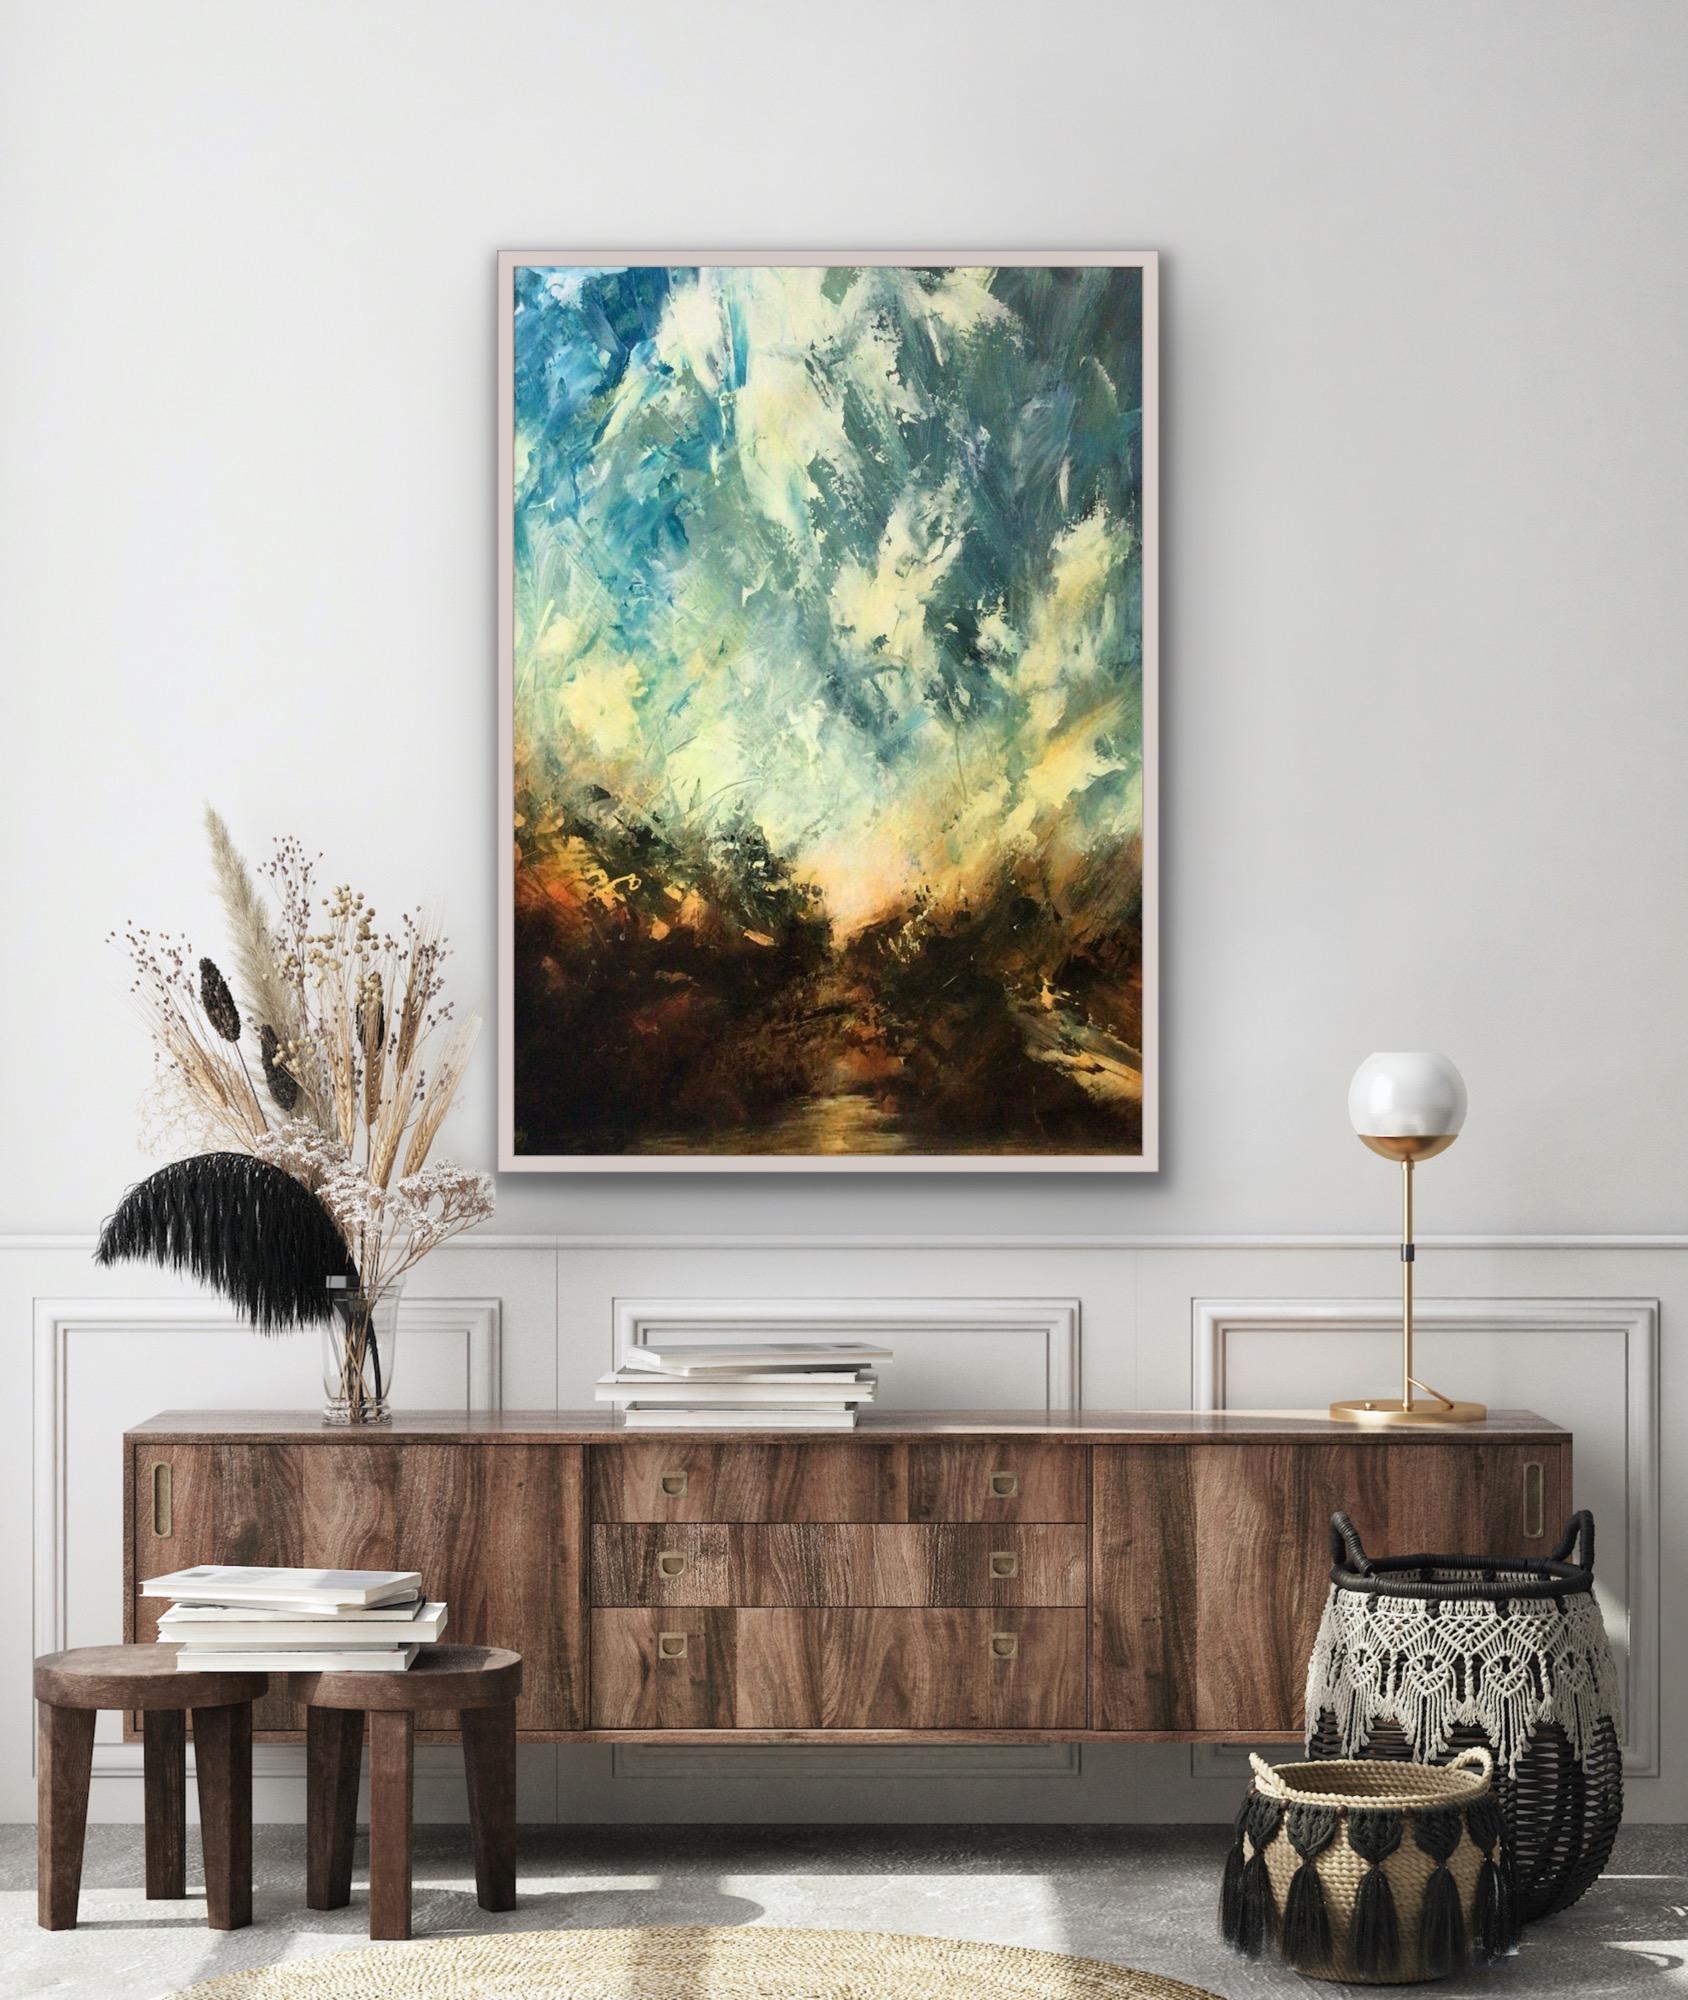 Le ciel, la rivière, la peinture abstraite de paysage contemporain, l'art du paysage marin, l'art du paysage - Painting de David Hayes